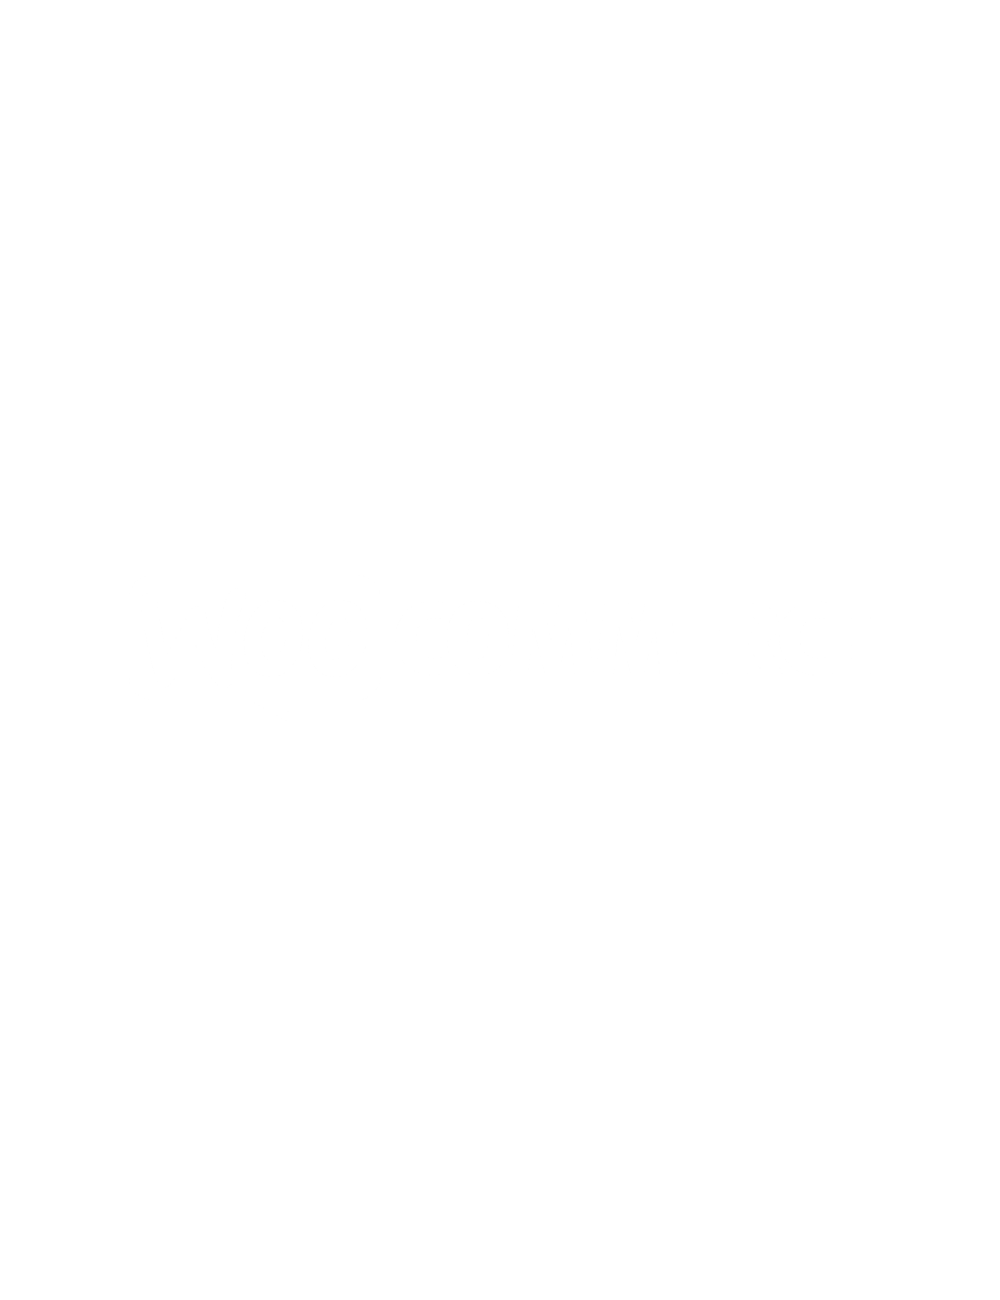 Woocommerce Developer - Freelance